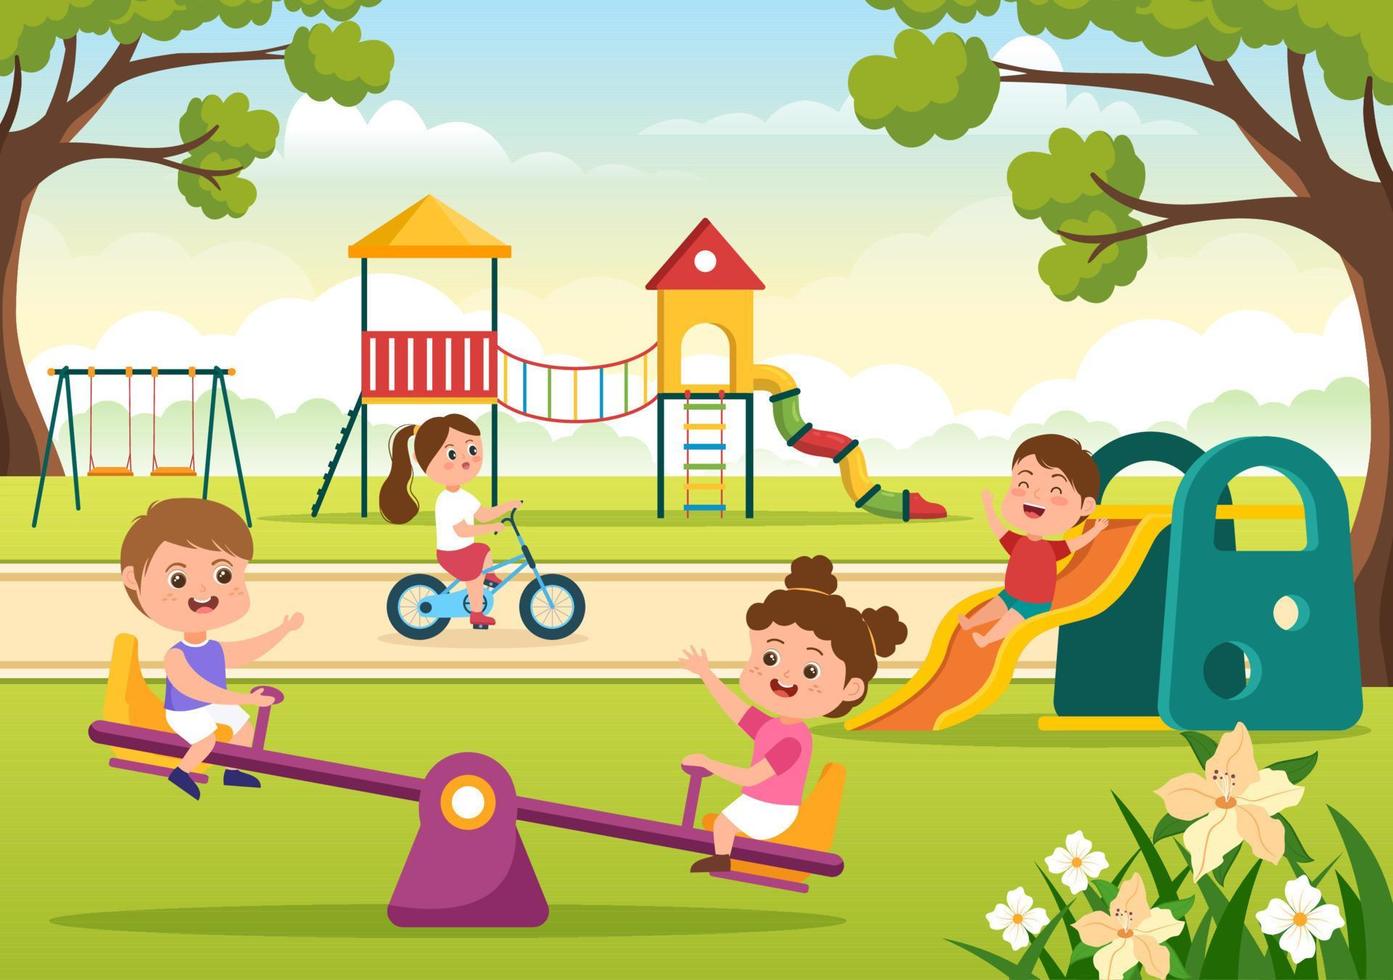 lekplats för barn med gungor, rutschkana, klätterstegar och mer i nöjesparken för små att leka i platt tecknad illustration vektor